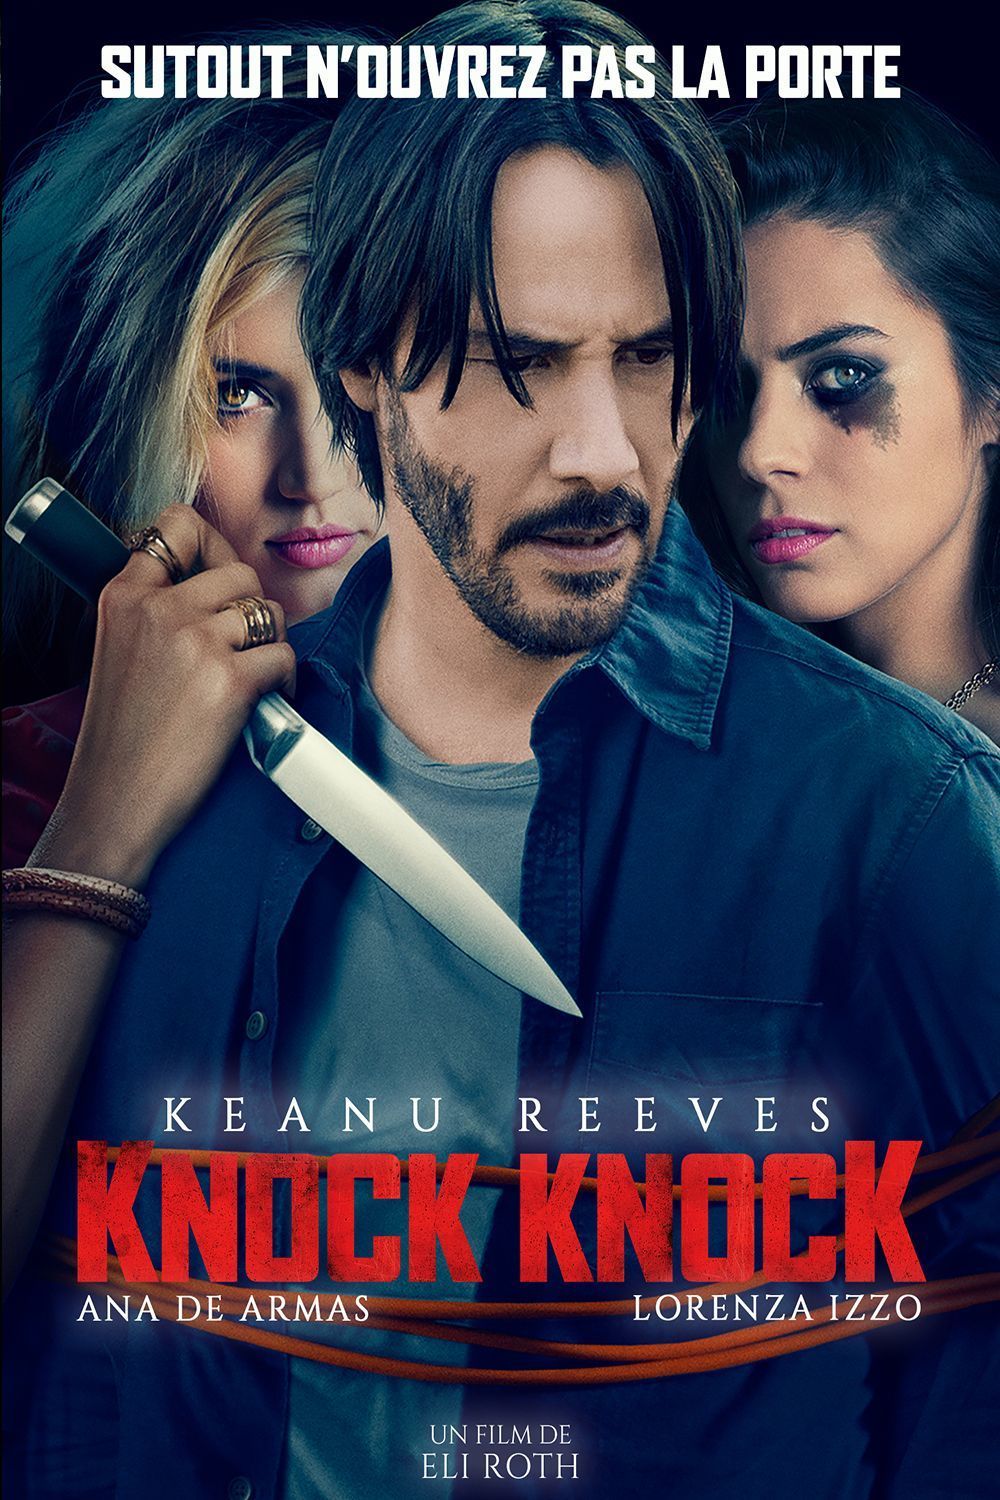 knockknock full movie